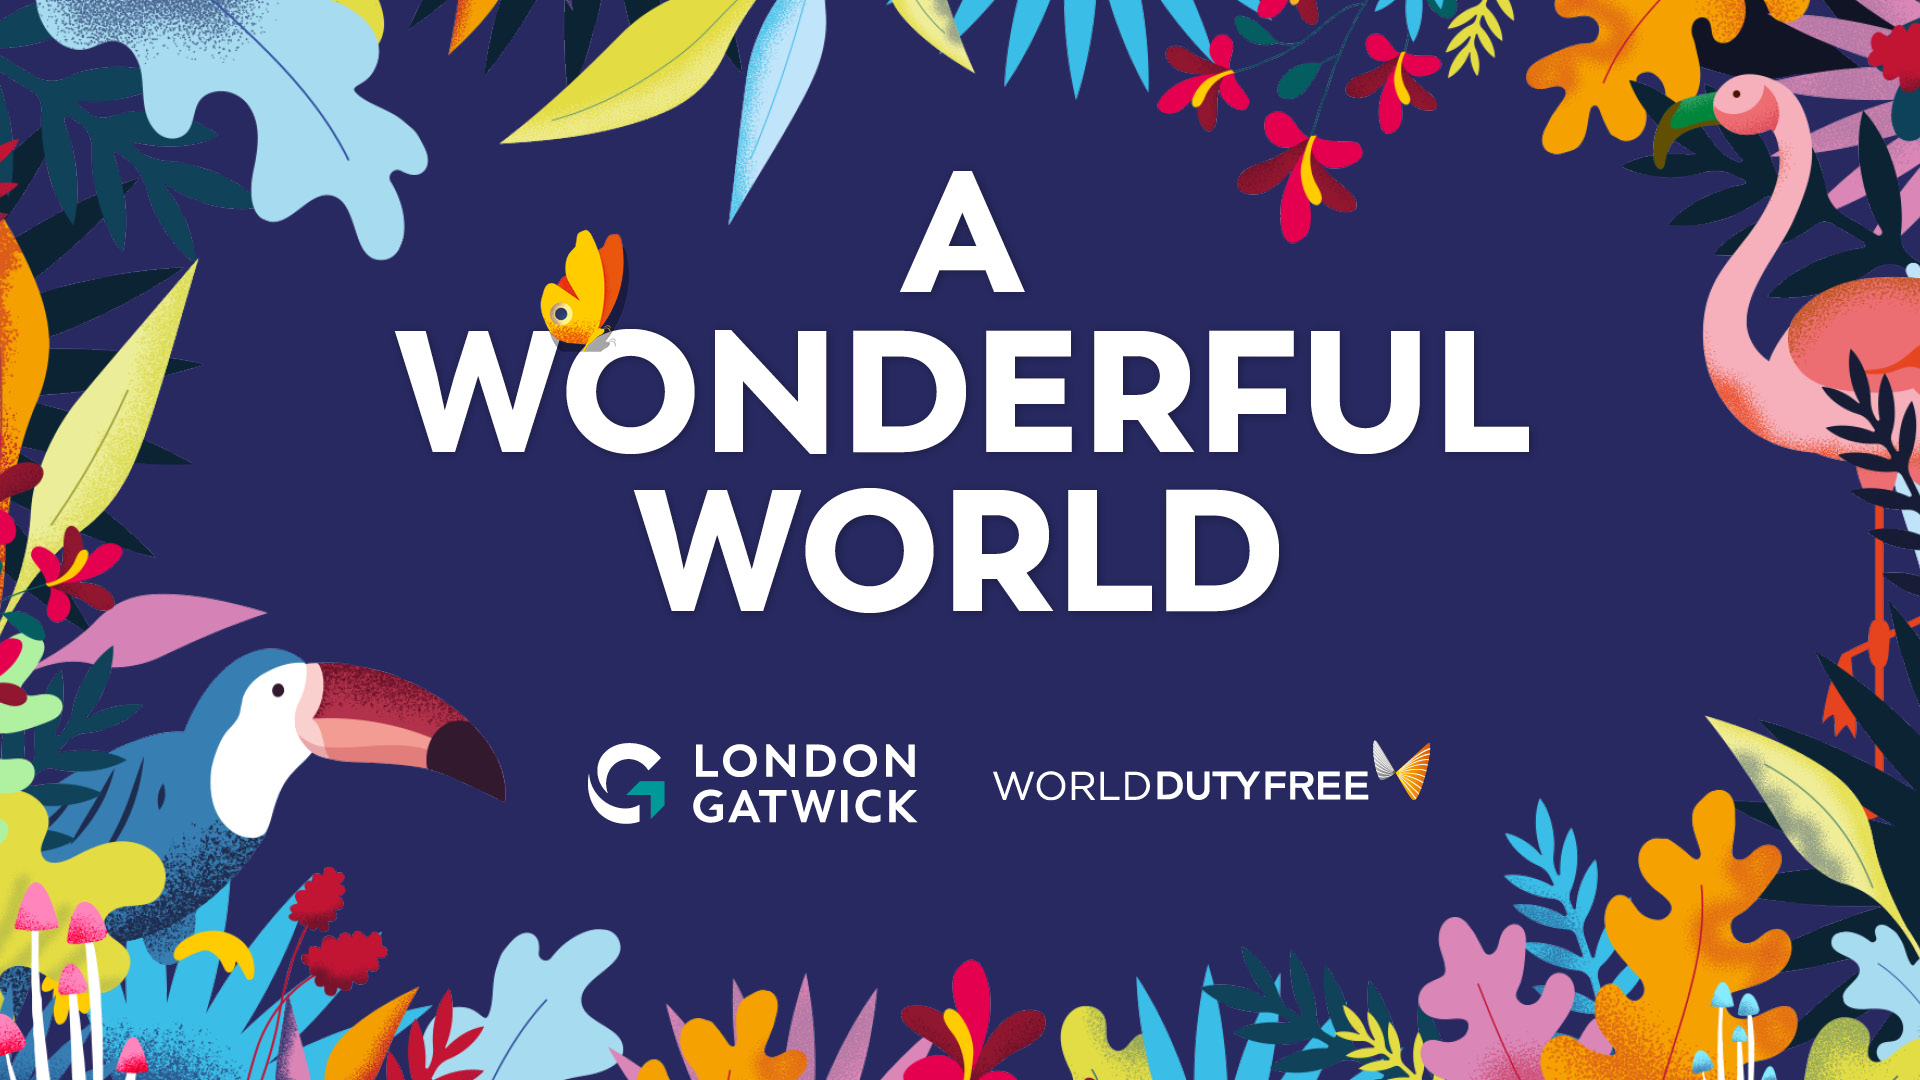 A wonderful world Gatwick campaign 